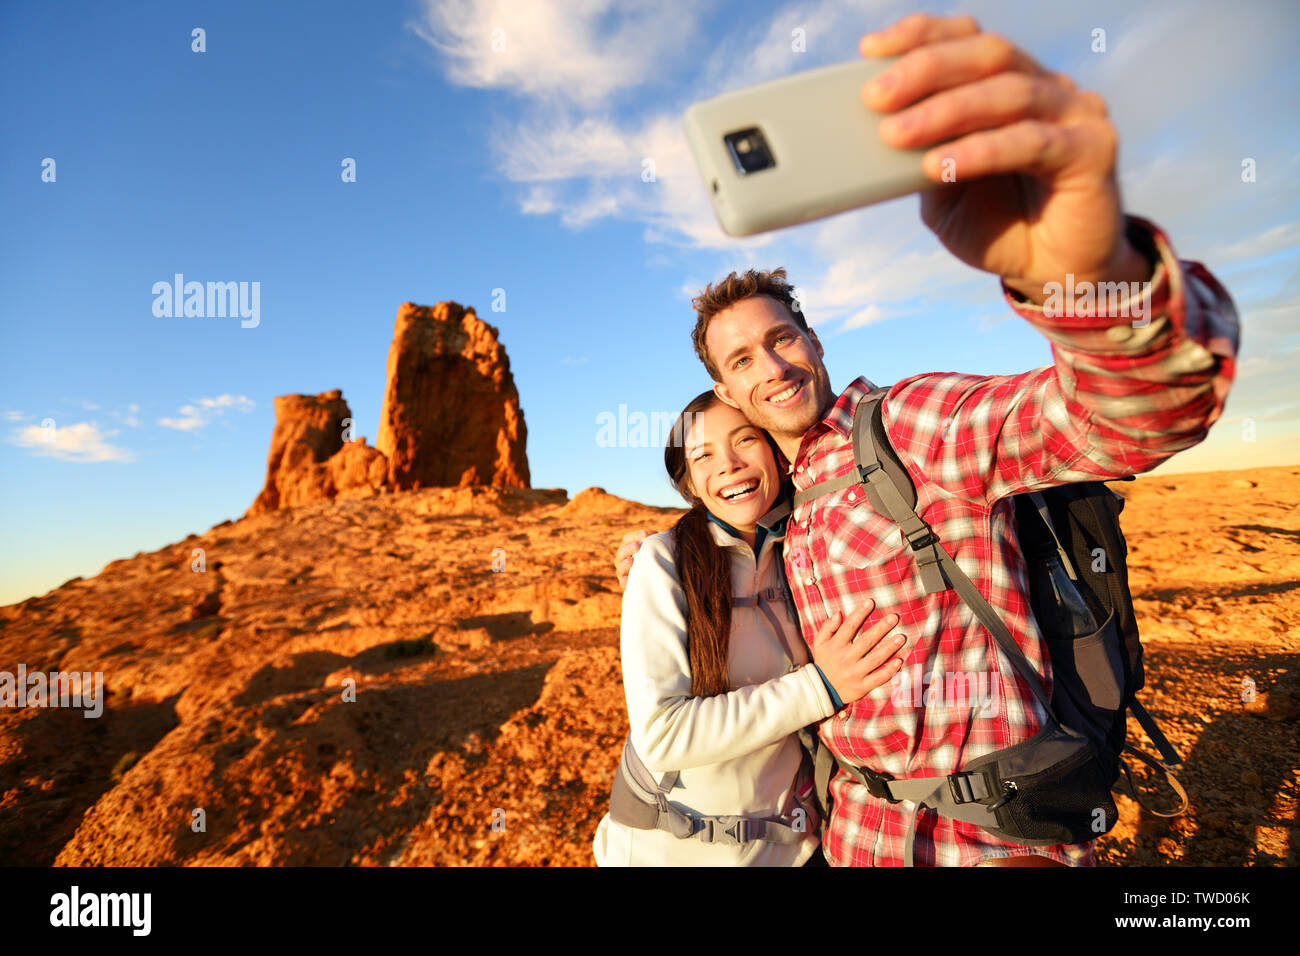 Selfie - glückliches Paar, self portrait Foto wandern. Zwei Freunde oder Geliebte auf Wanderung in die Kamera lächeln im Freien Berge von Roque Nublo, Gran Canaria, Kanarische Inseln, Spanien. Stockfoto